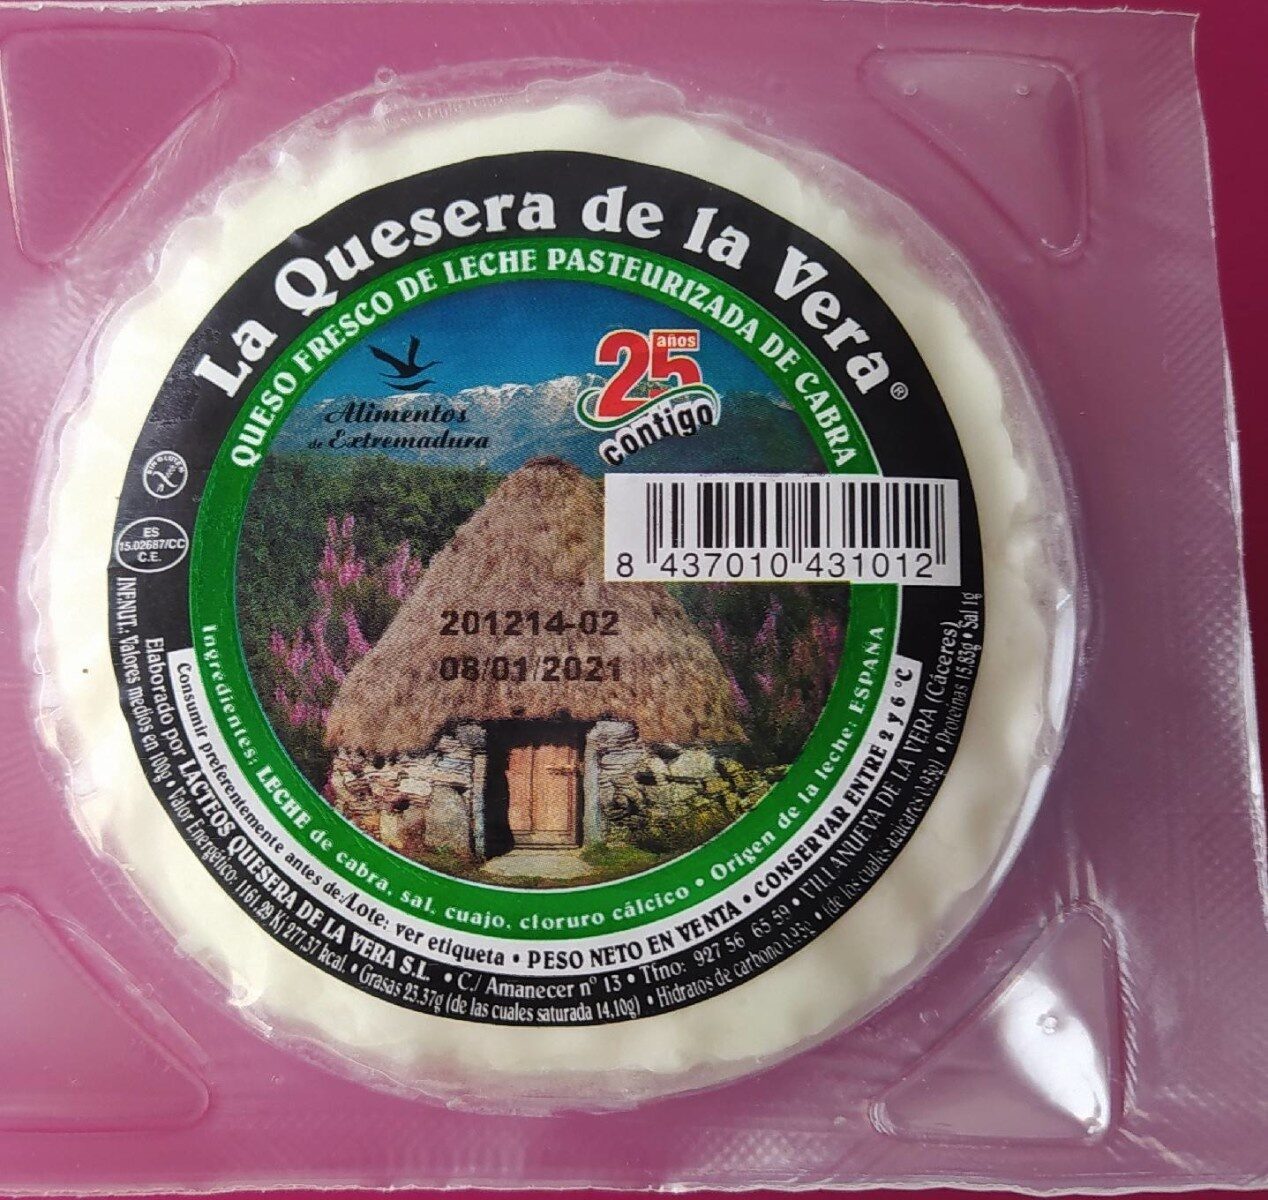 La quesera de la Vera - Product - es